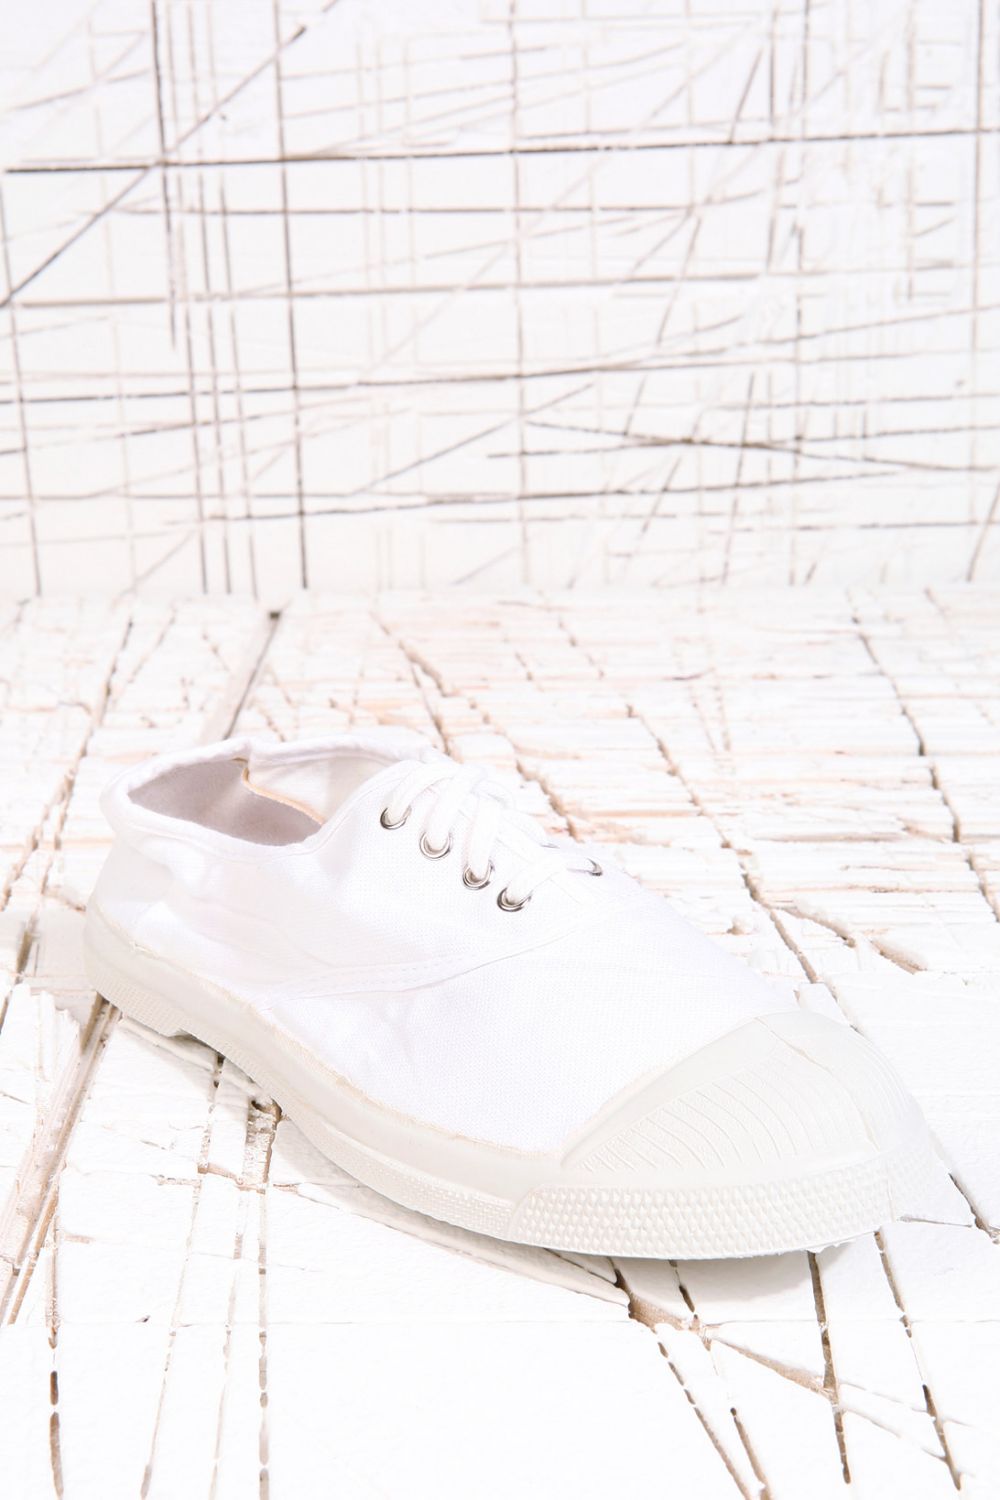 Les chaussures Bensimon, cultes, disponibles dans de nombreuses couleurs sur le site d'Urban Outfitters à 39€